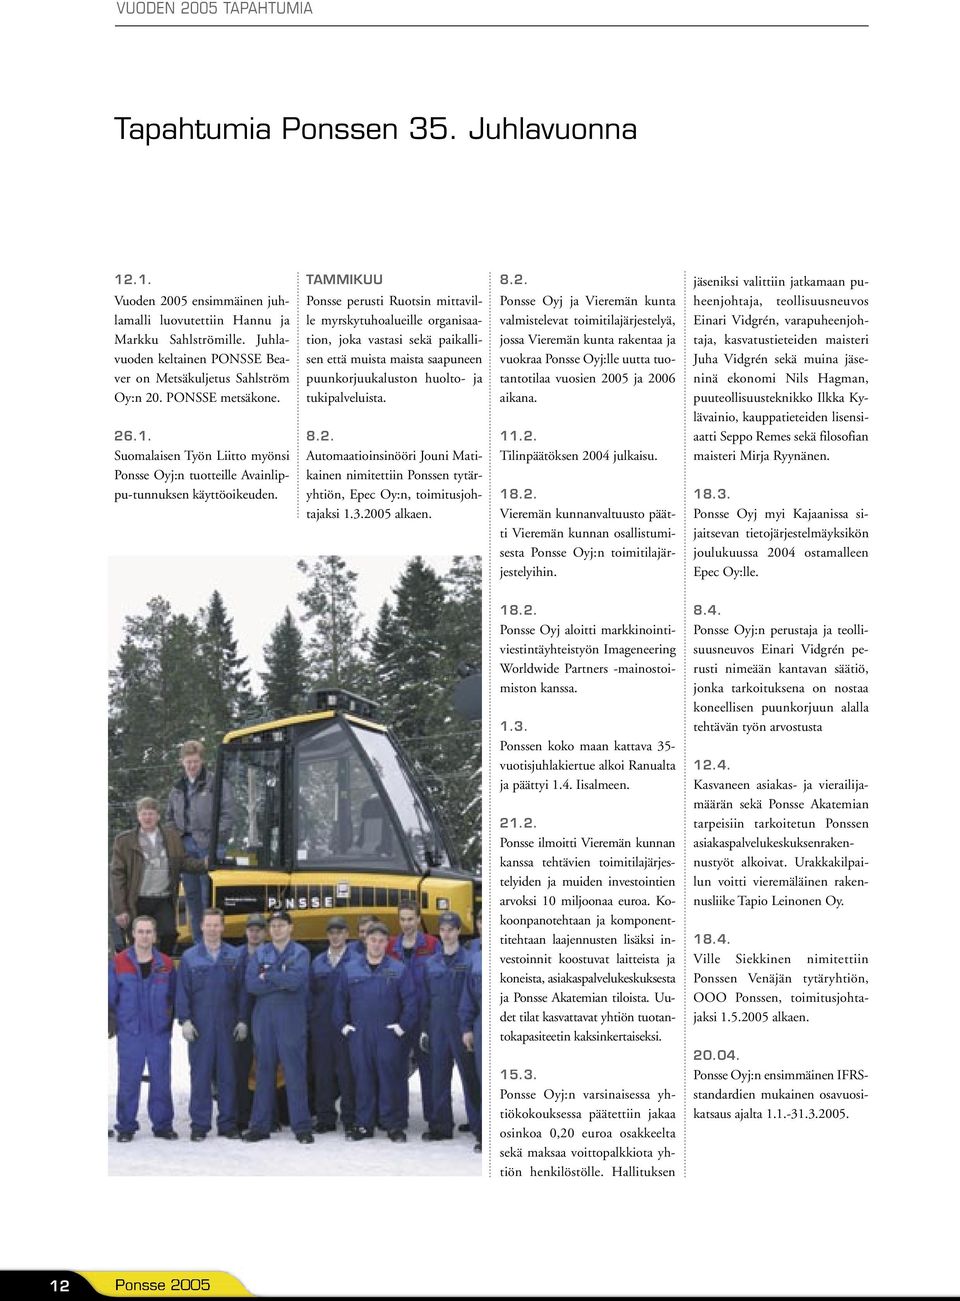 TAMMIKUU Ponsse perusti Ruotsin mittaville myrskytuhoalueille organisaation, joka vastasi sekä paikallisen että muista maista saapuneen puunkorjuukaluston huolto- ja tukipalveluista. 8.2.